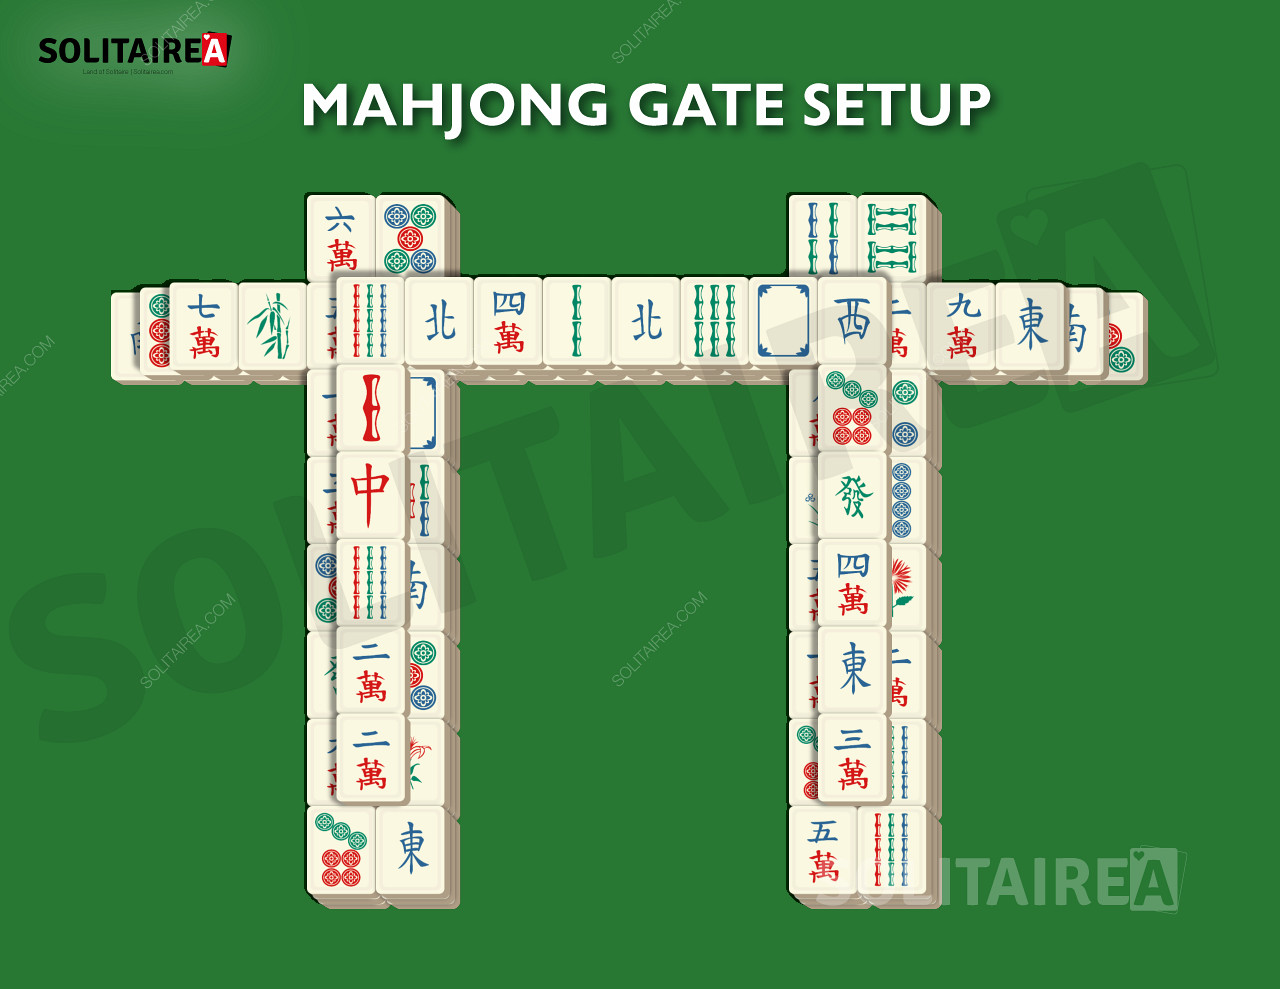 Configuración y estrategia de Mahjong Gate